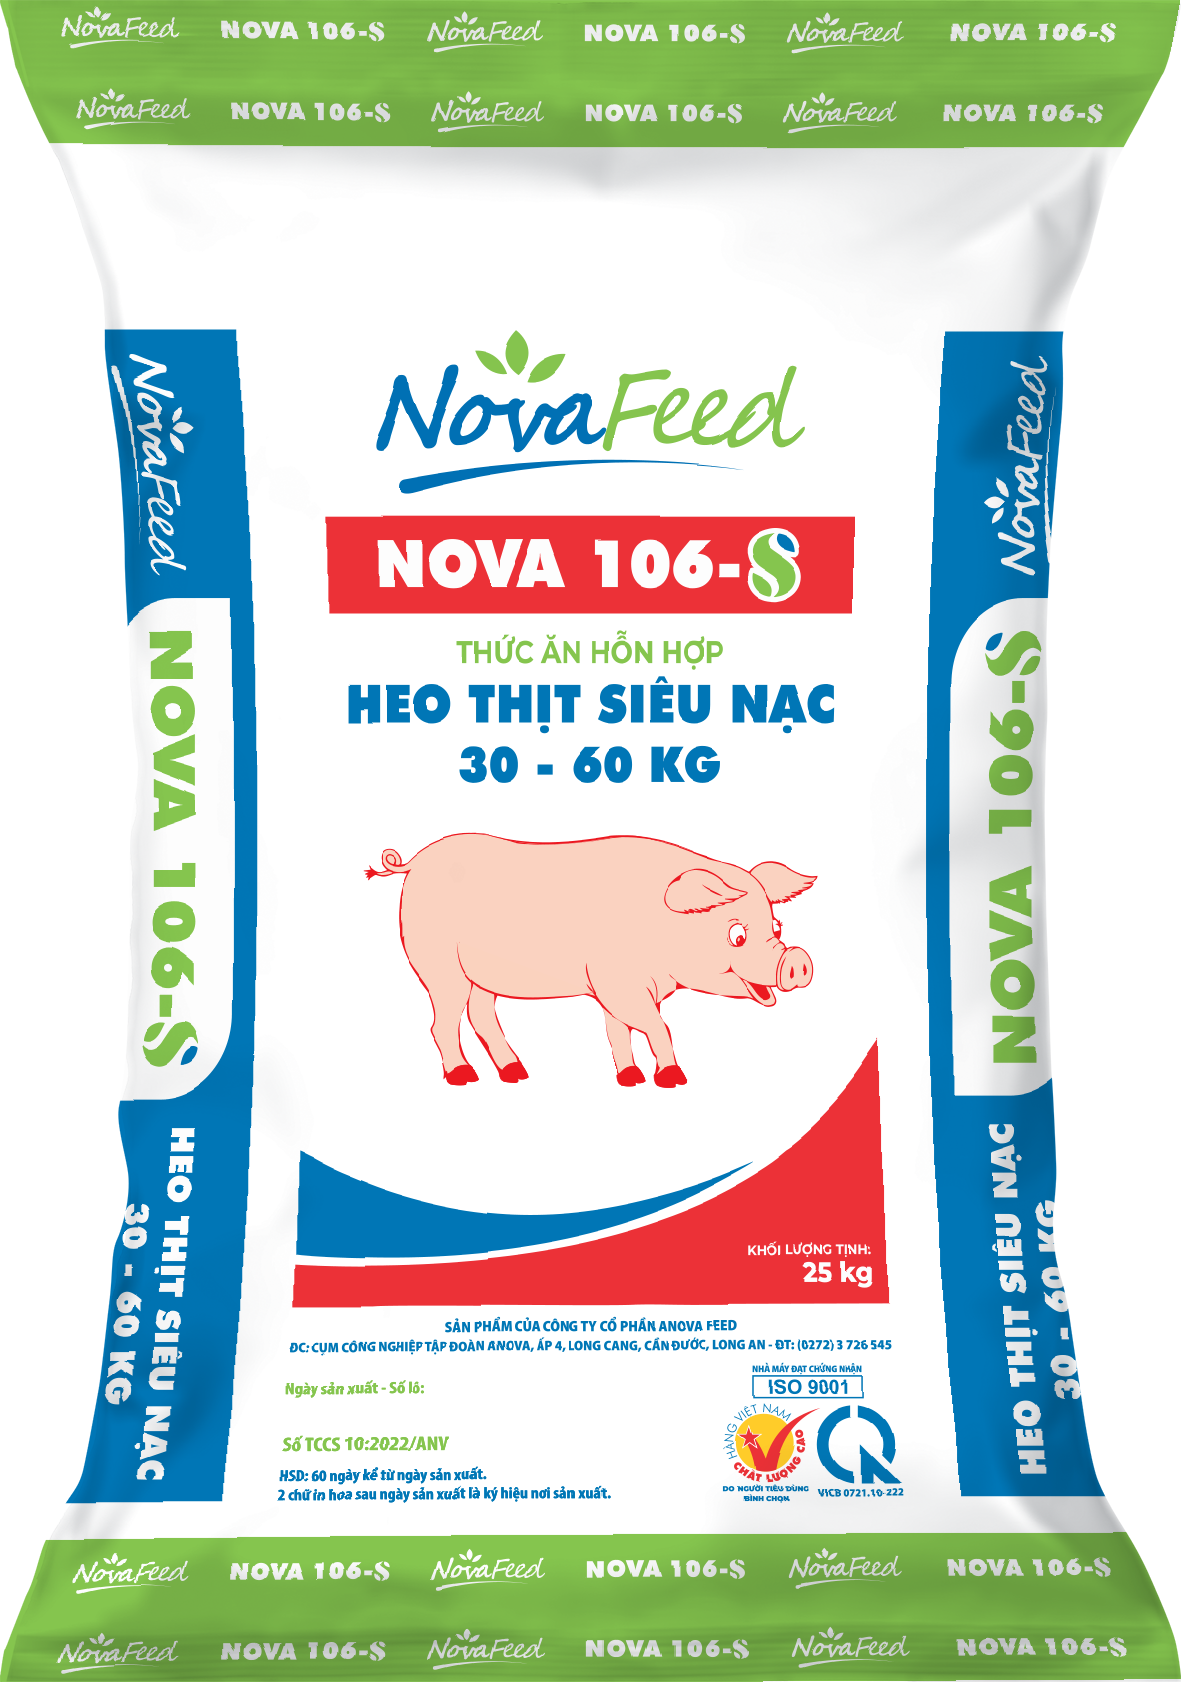 Thức ăn hỗn hợp HEO THỊT SIÊU NẠC 30 - 60kg NOVA 106 - S